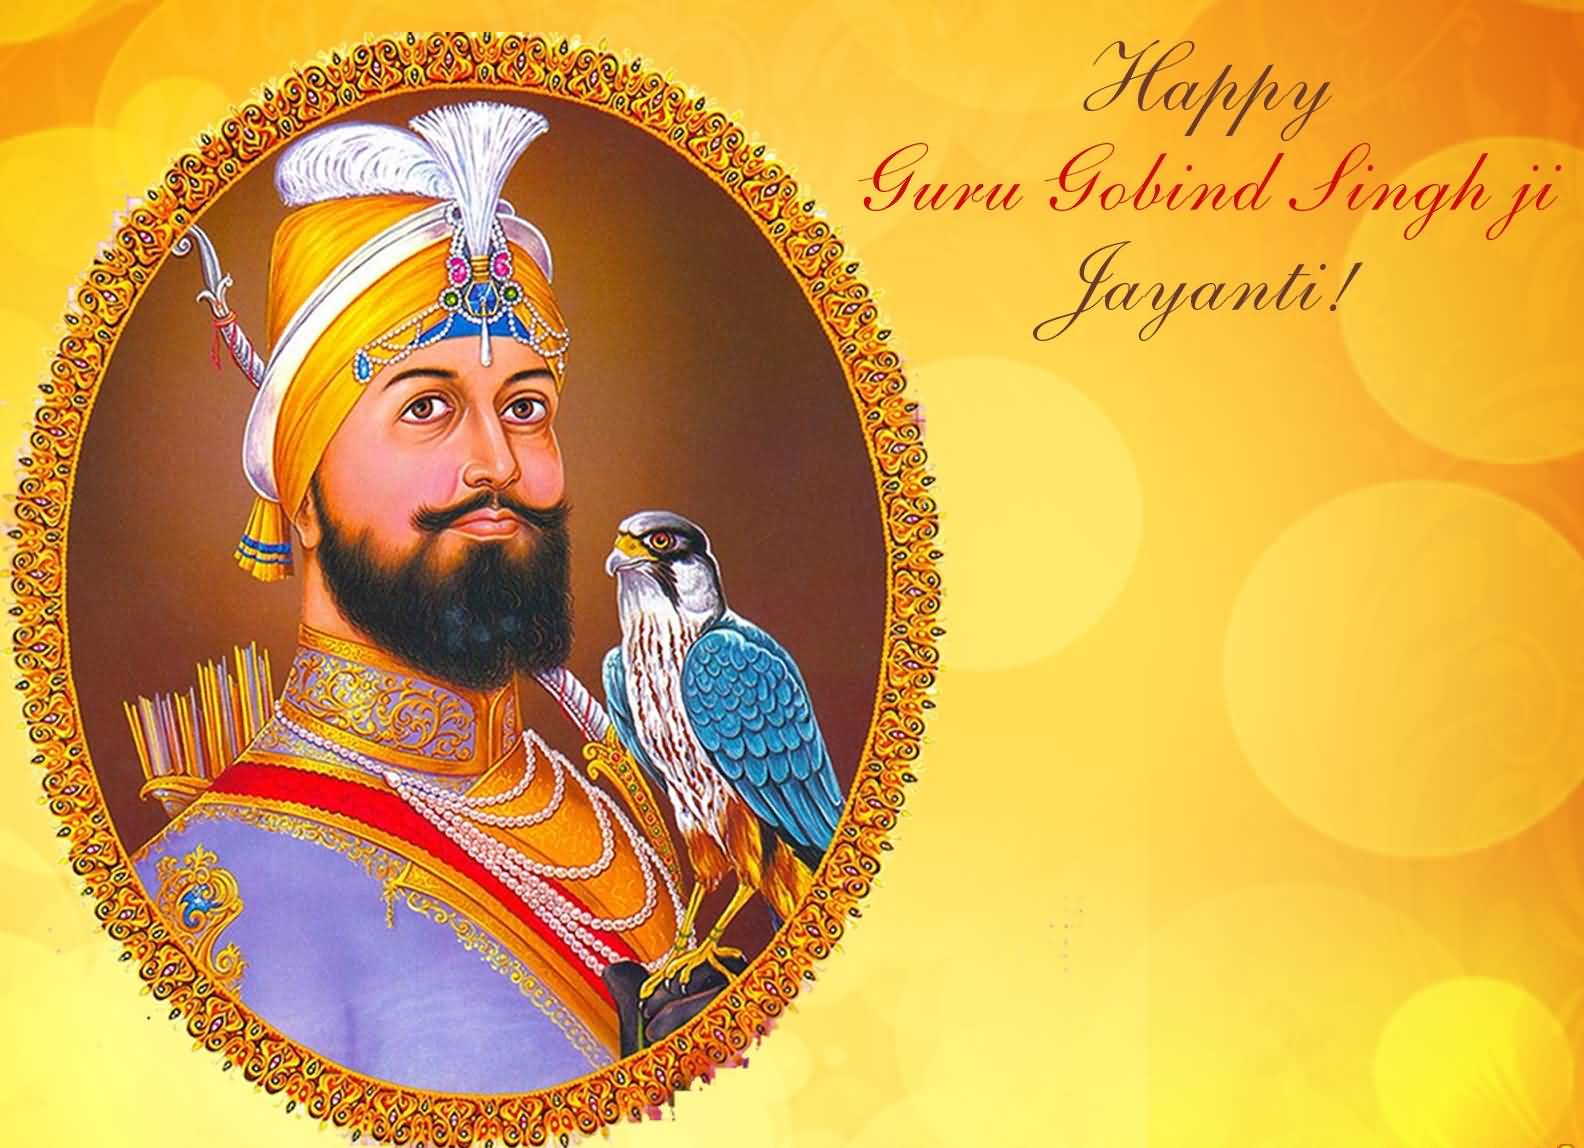 Happy Guru Gobind Singh Ji Jayanti